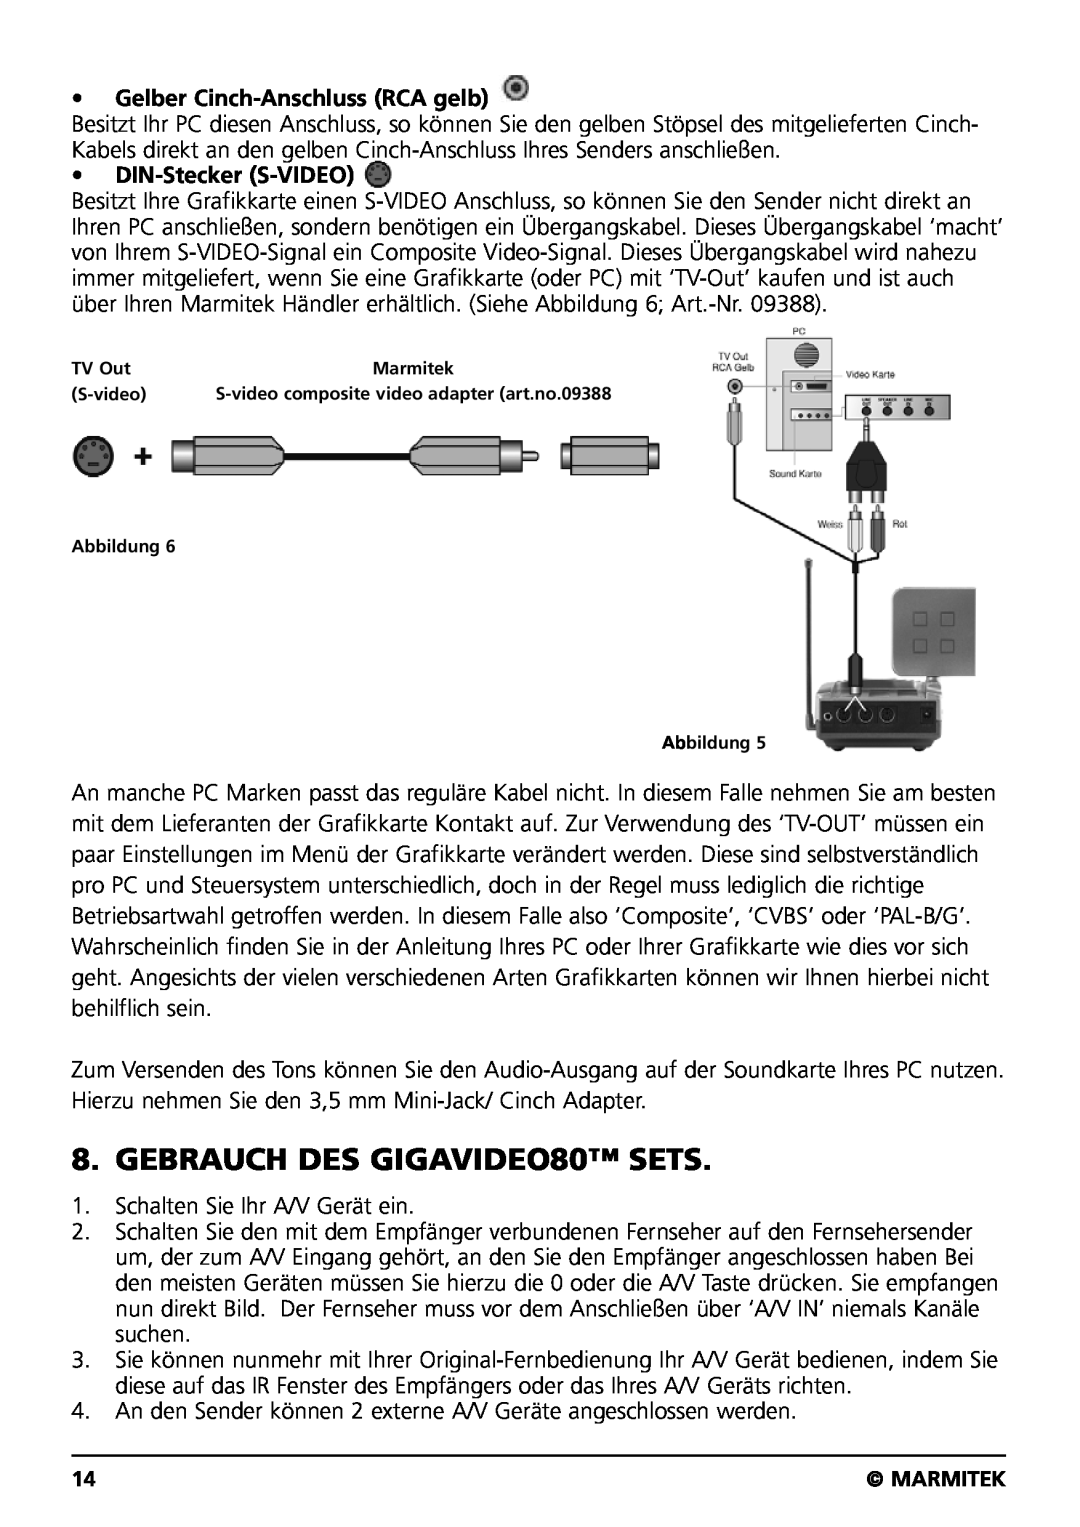 Marmitek user manual GEBRAUCH DES GIGAVIDEO80 SETS, Gelber Cinch-Anschluss RCA gelb, DIN-Stecker S-VIDEO 